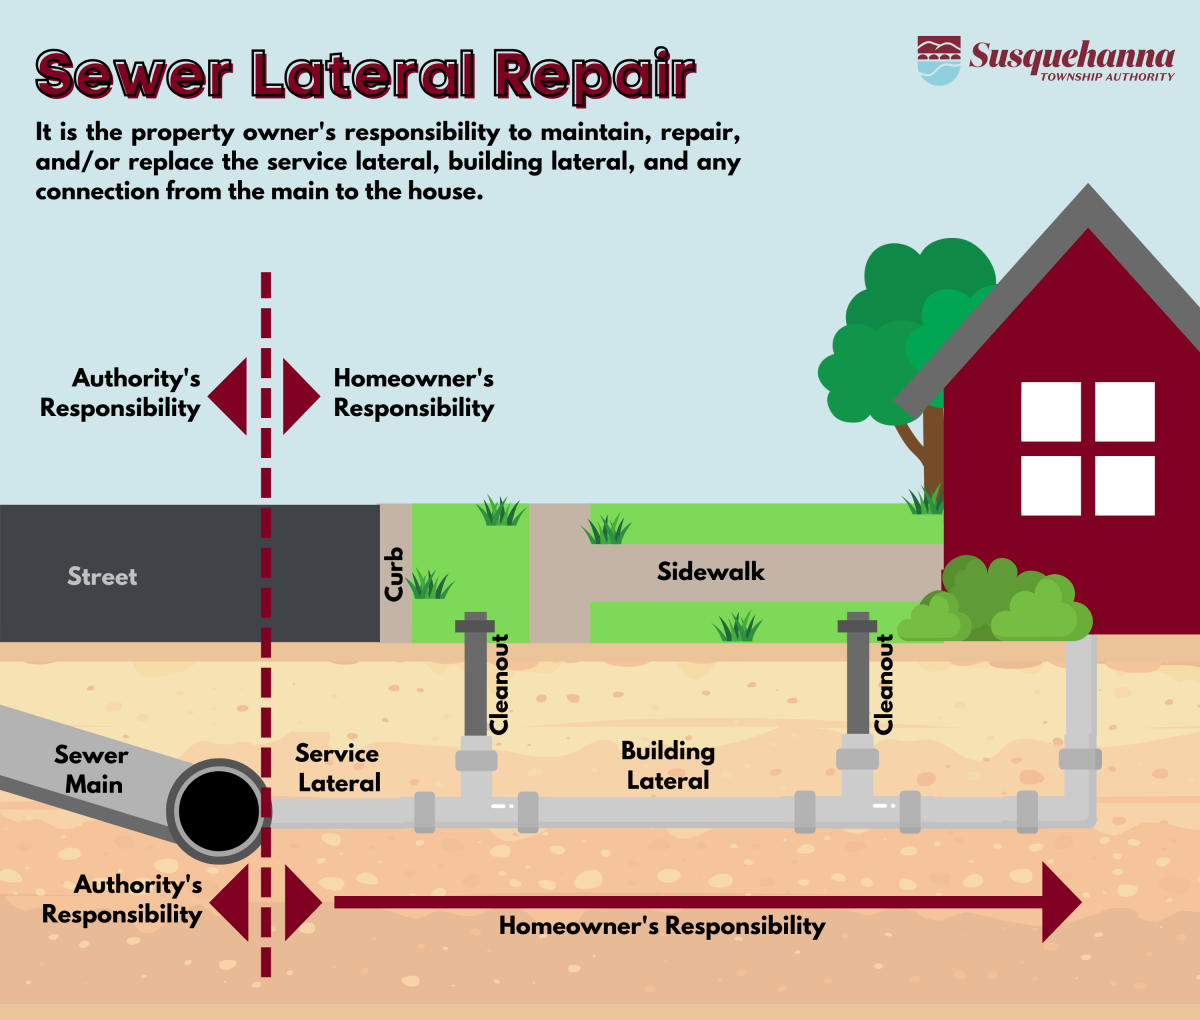 Sewer lateral repair